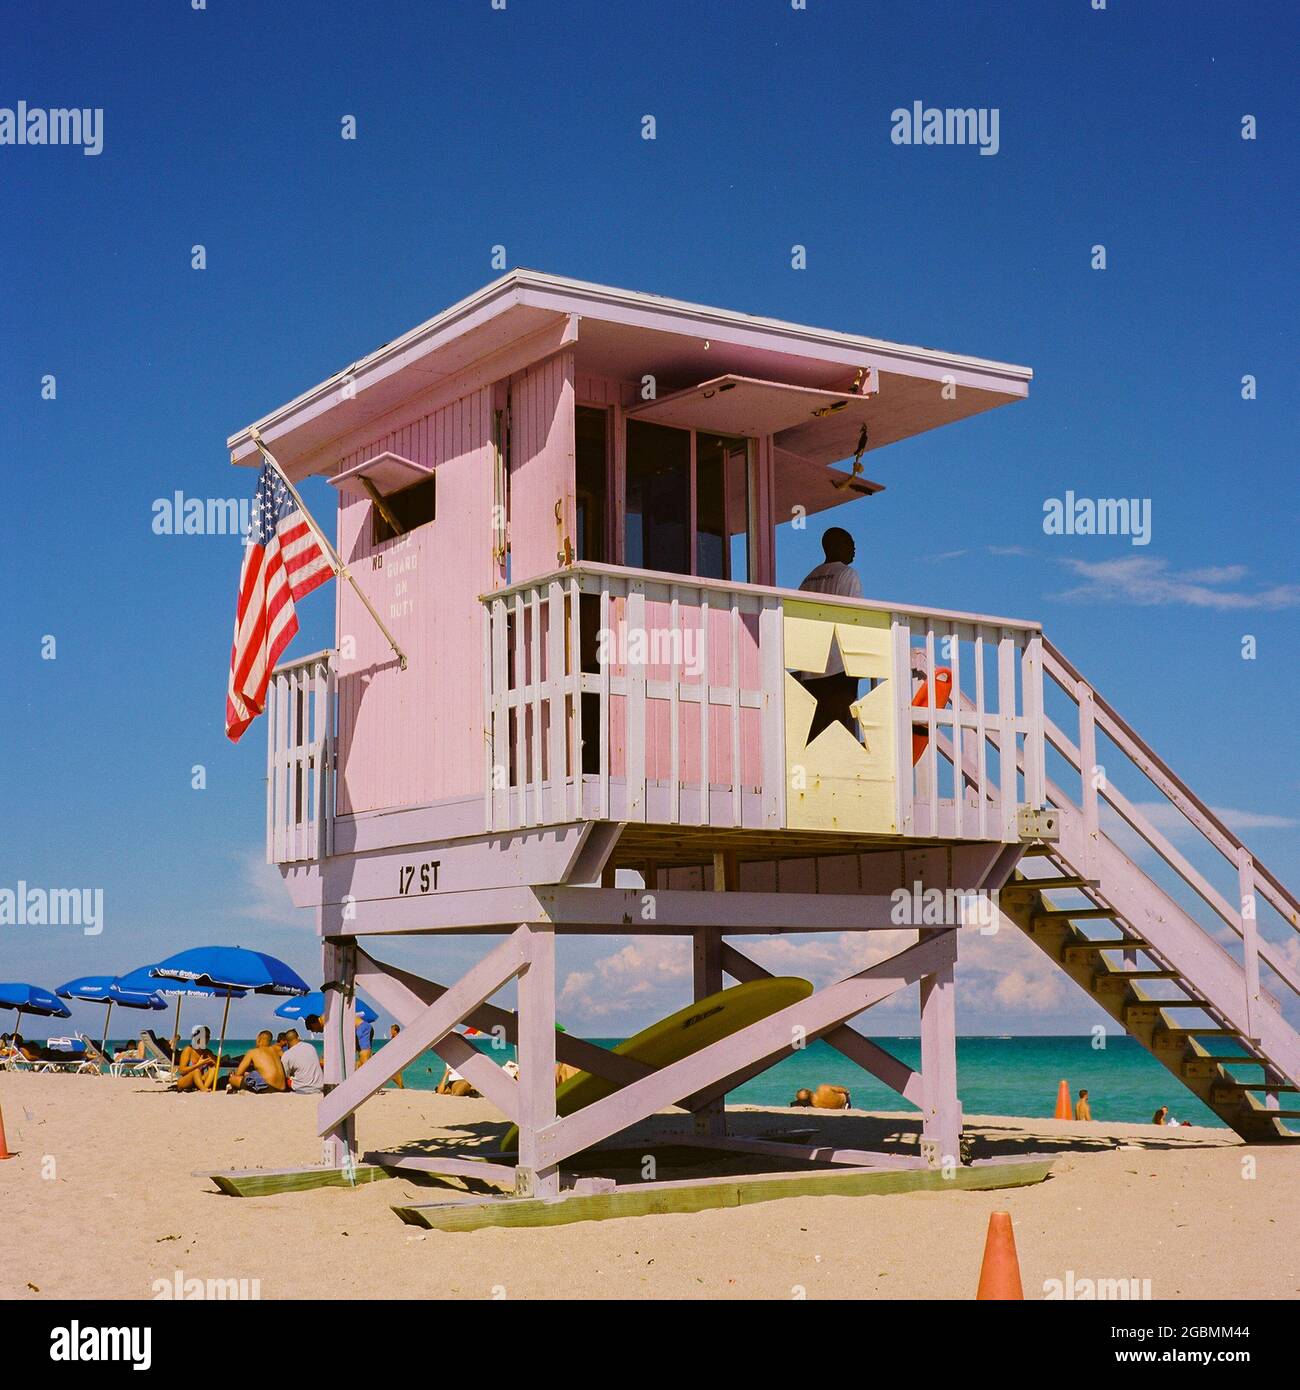 Lifeguard Station on Miami Beach, Florida Stock Photo